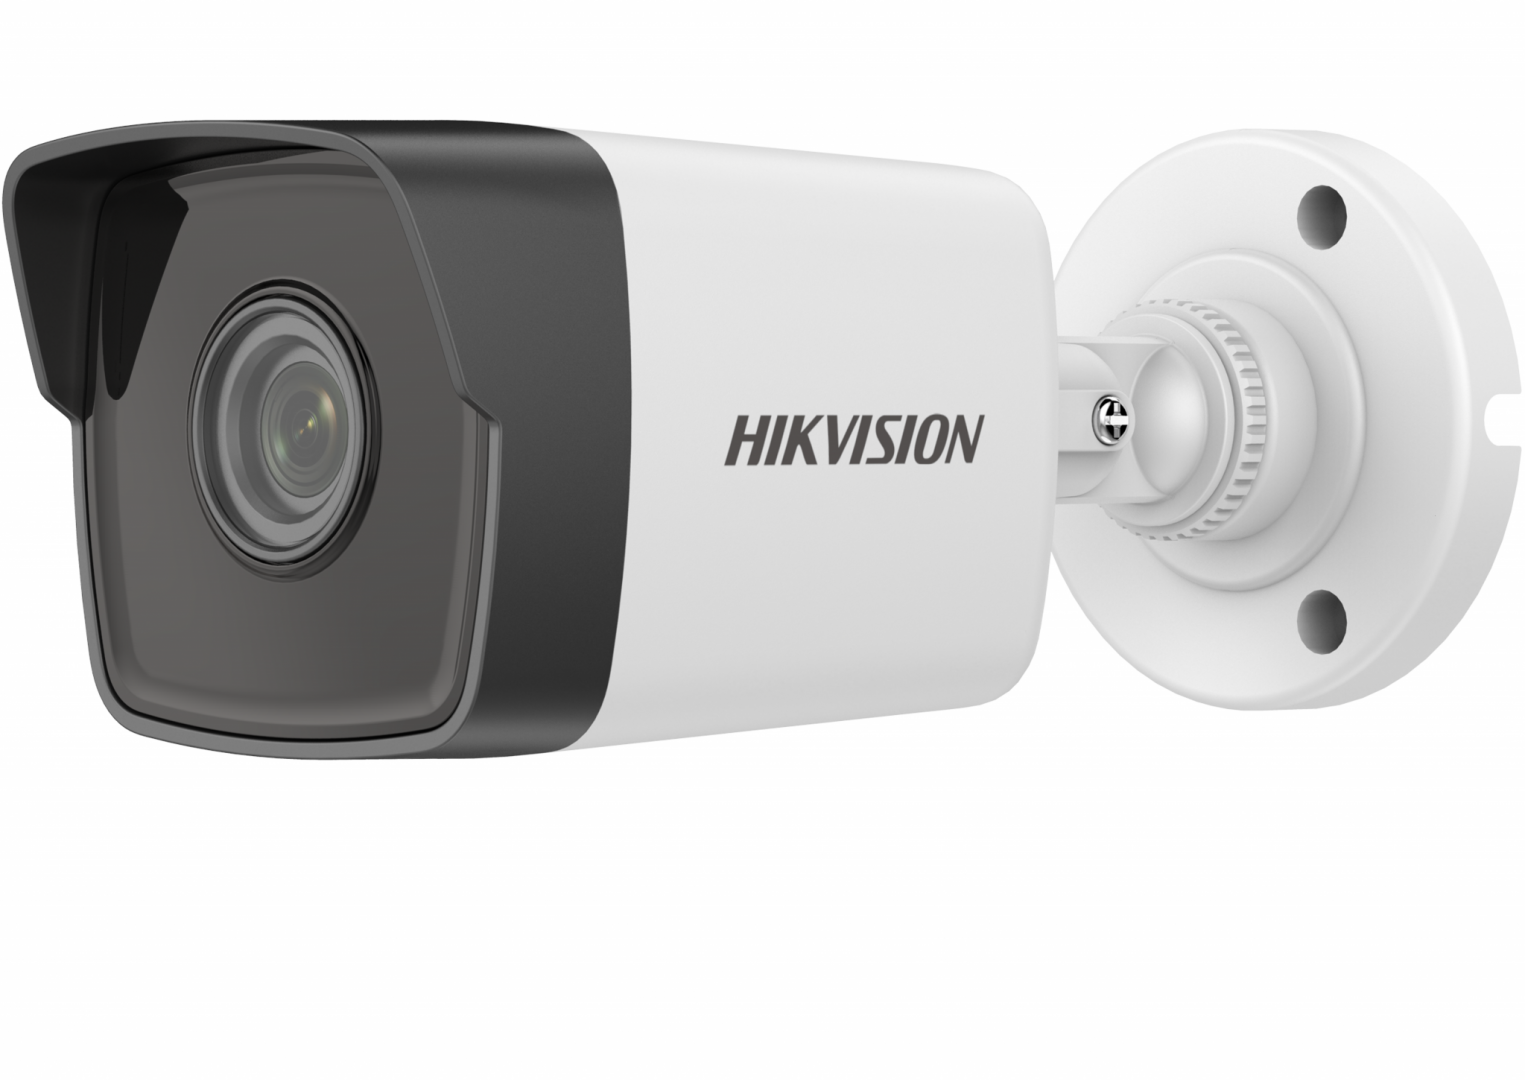 Camera supraveghere exterior IP Hikvision DS-2CD1043G0-I4C, 4 MP, IR 30 m, 4 mm, PoE, detectia miscarii